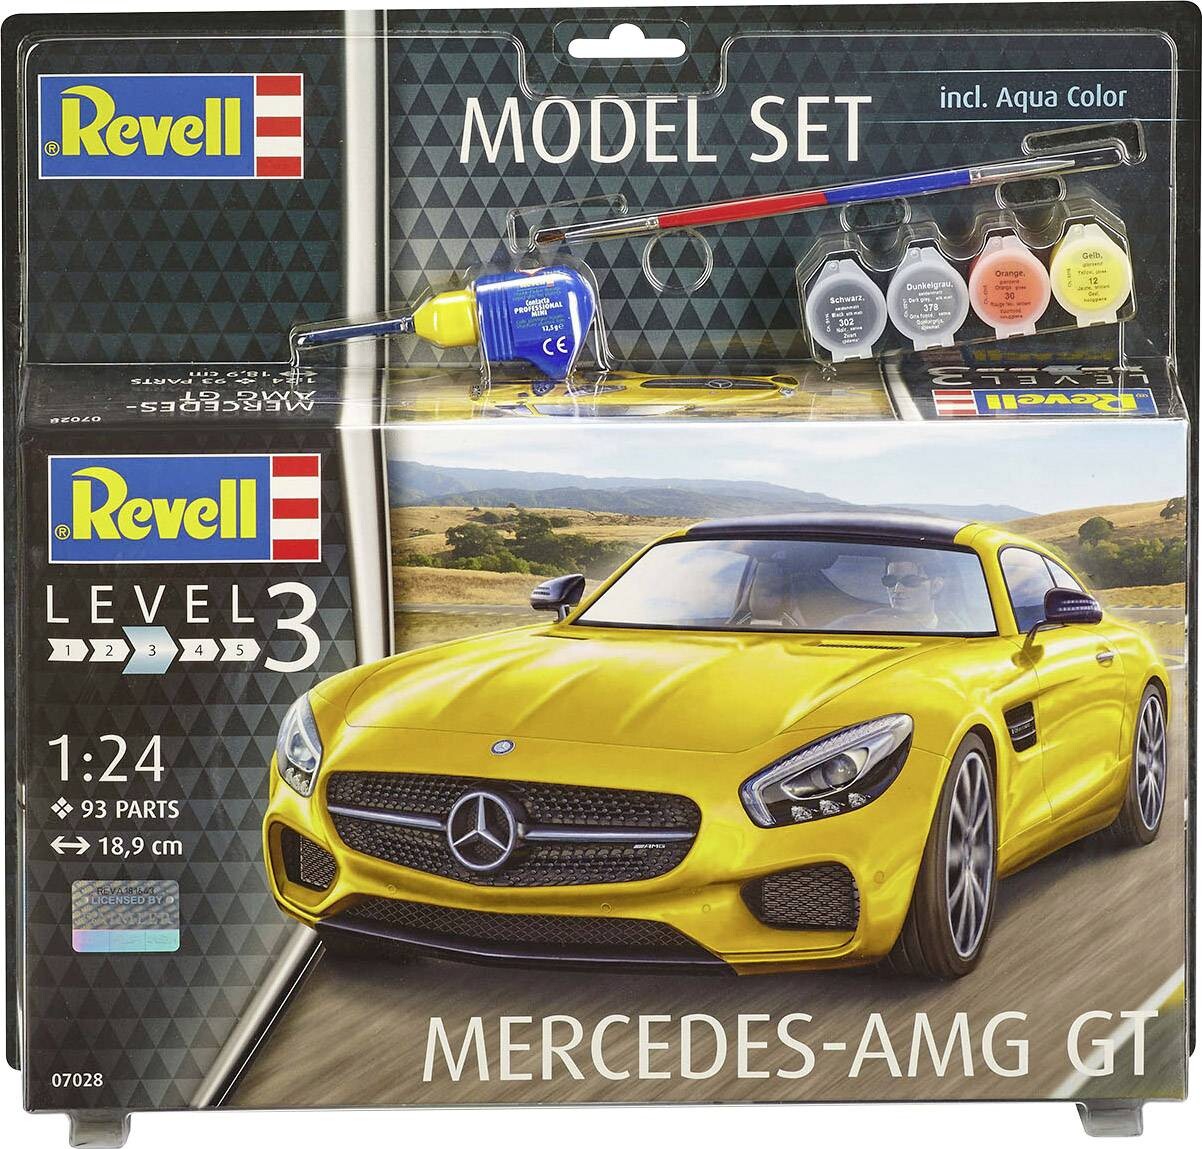 Billede af Revell - Mercedes Amg Gt Byggesæt Inkl. Maling - 1:24 - Level 3 - 67028 hos Gucca.dk